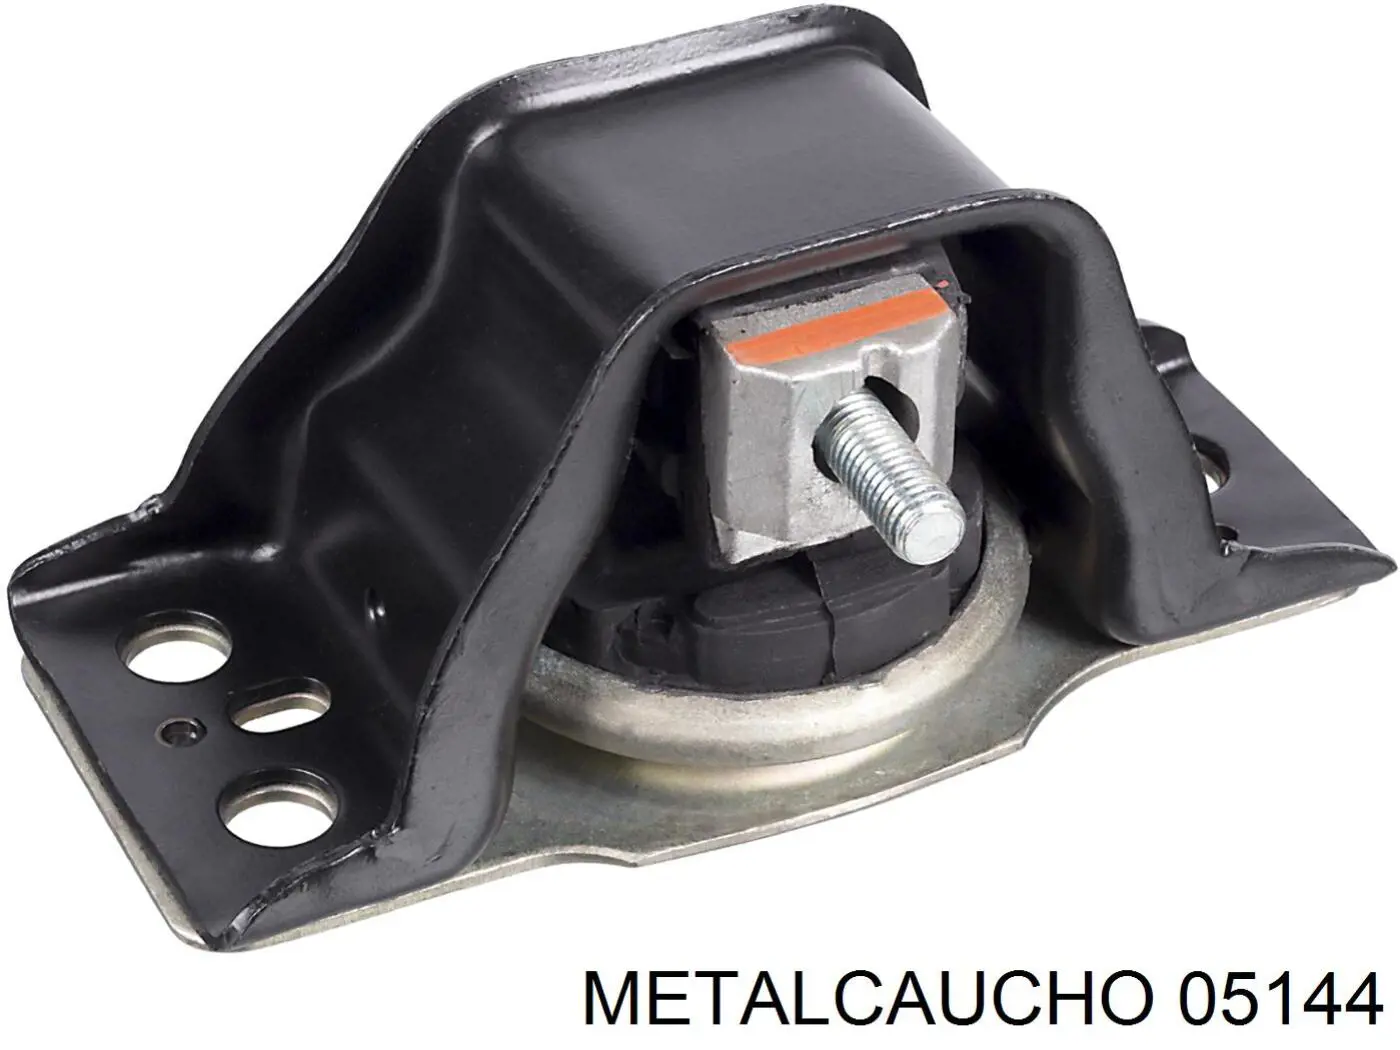 05144 Metalcaucho soporte de motor derecho